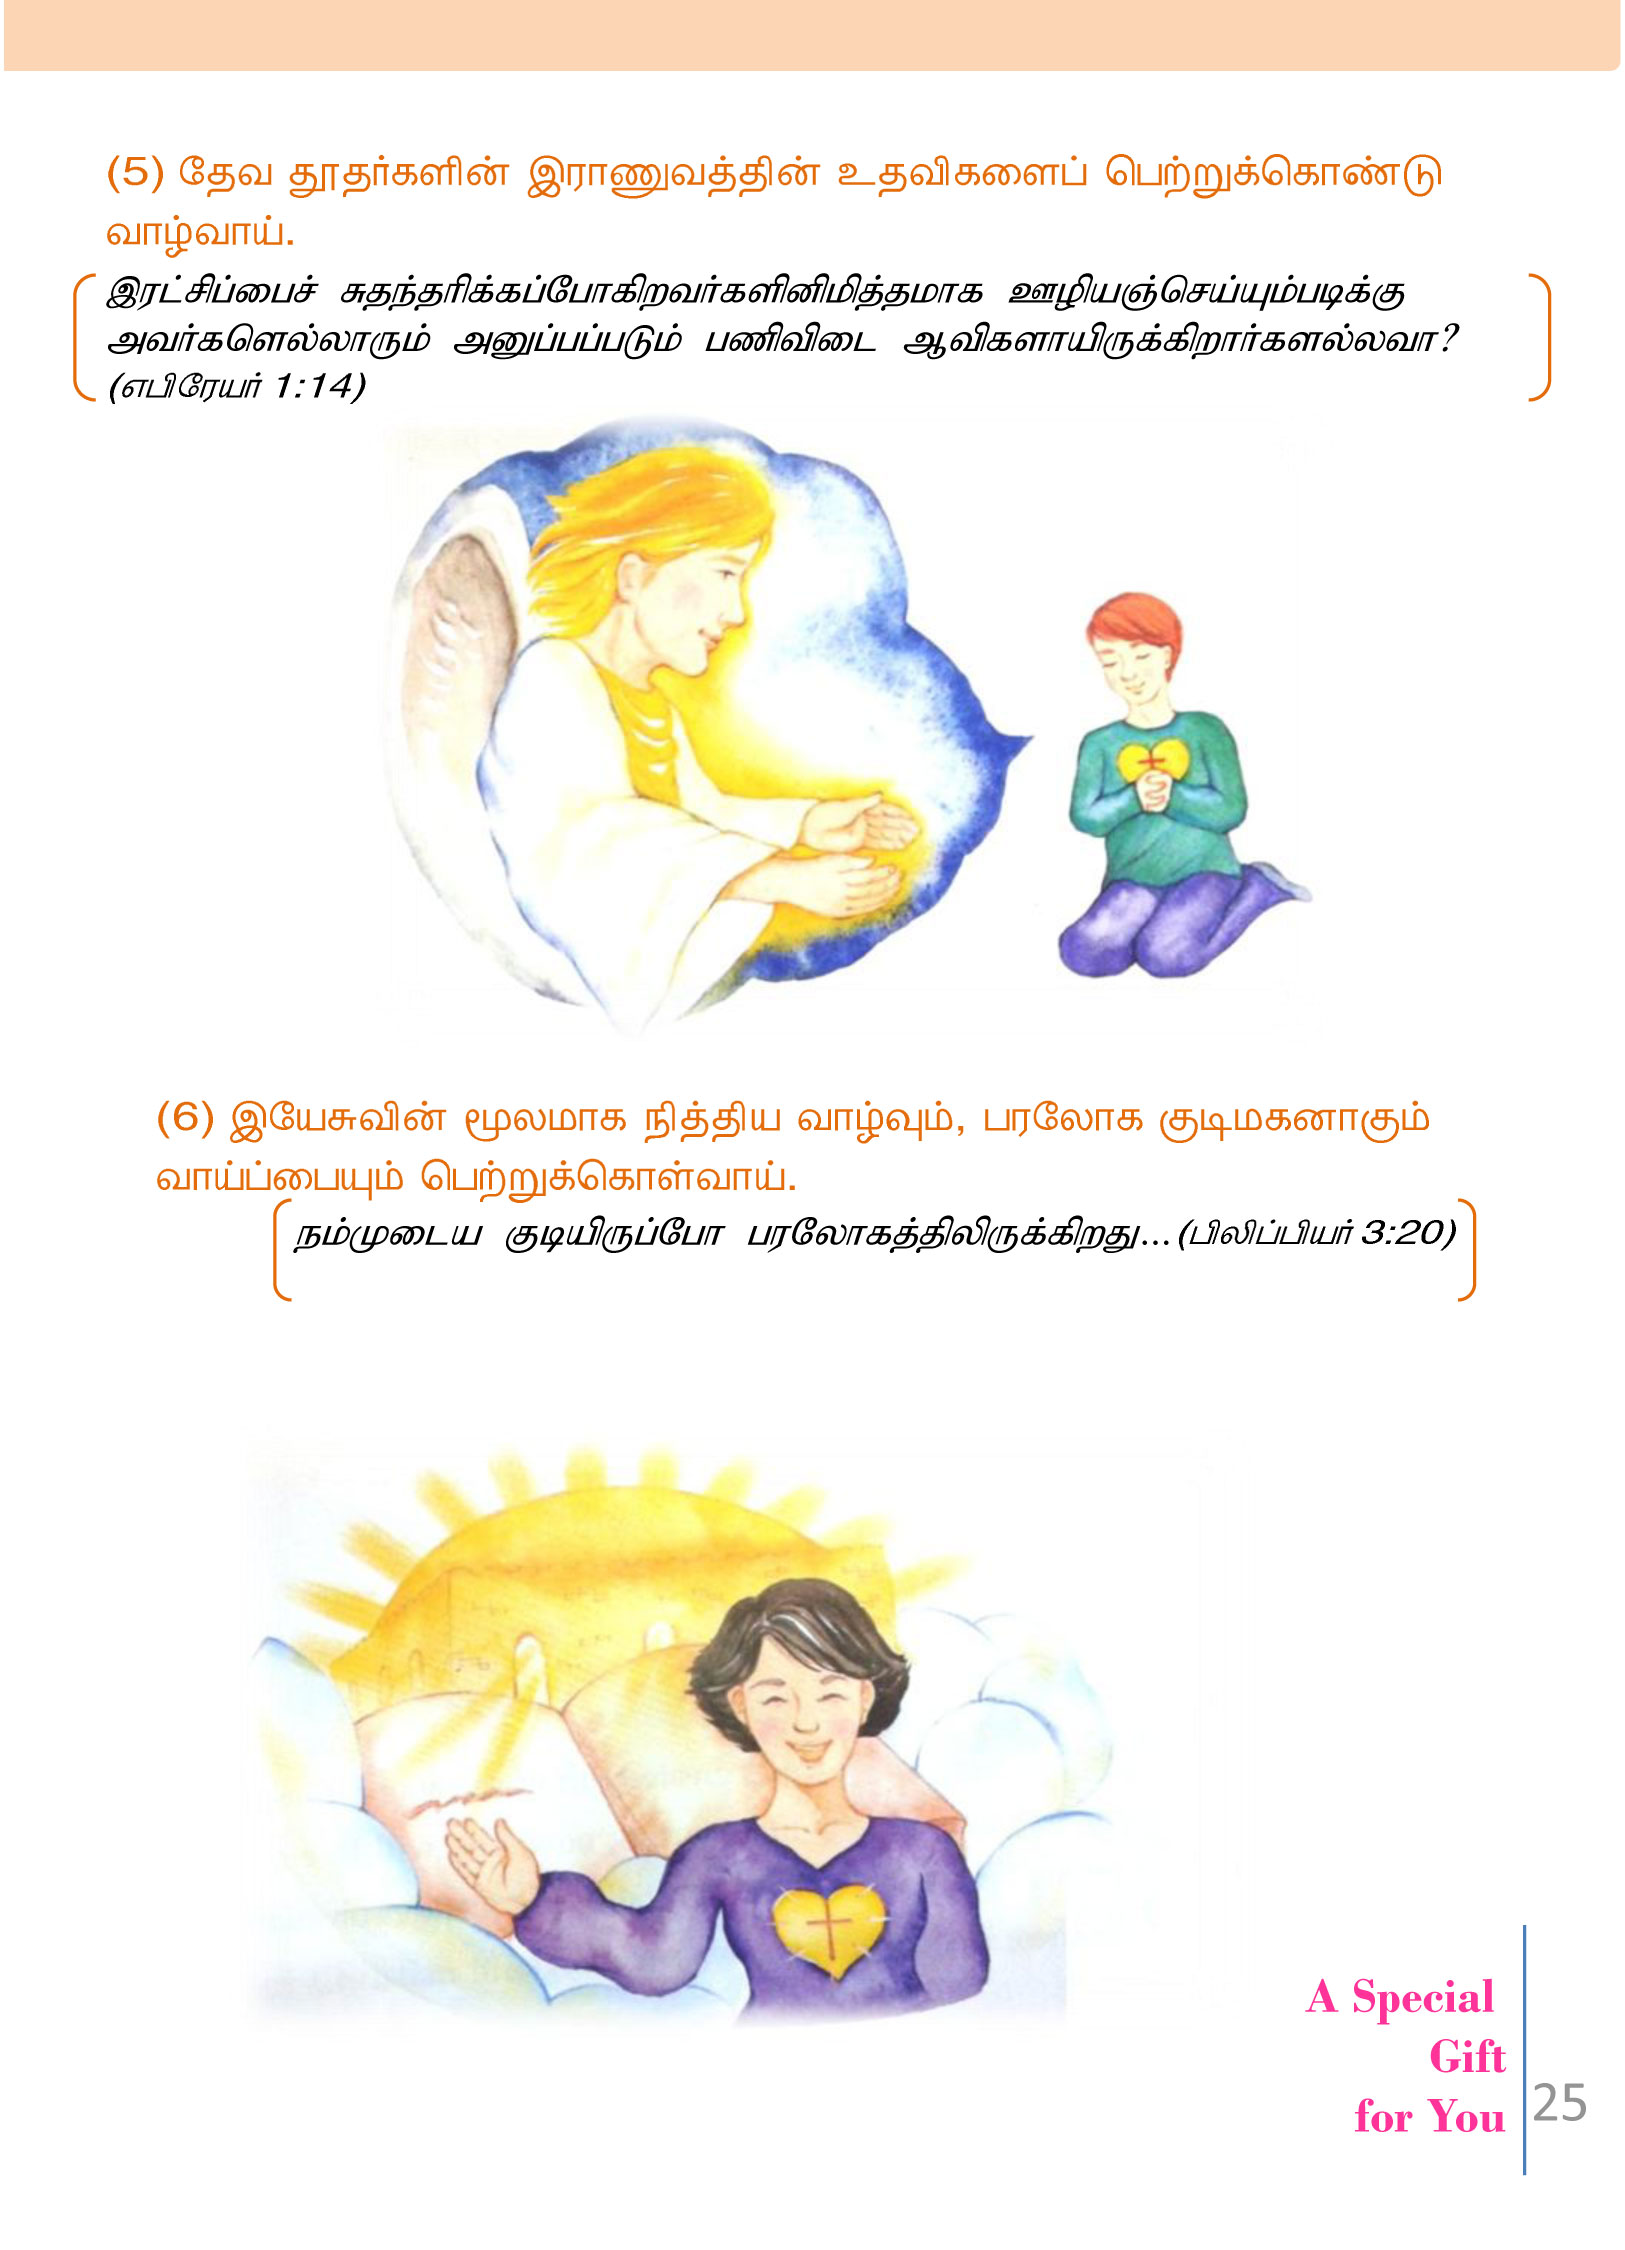 Tamil-Evangelism-Book-Pdf-3-25.jpg